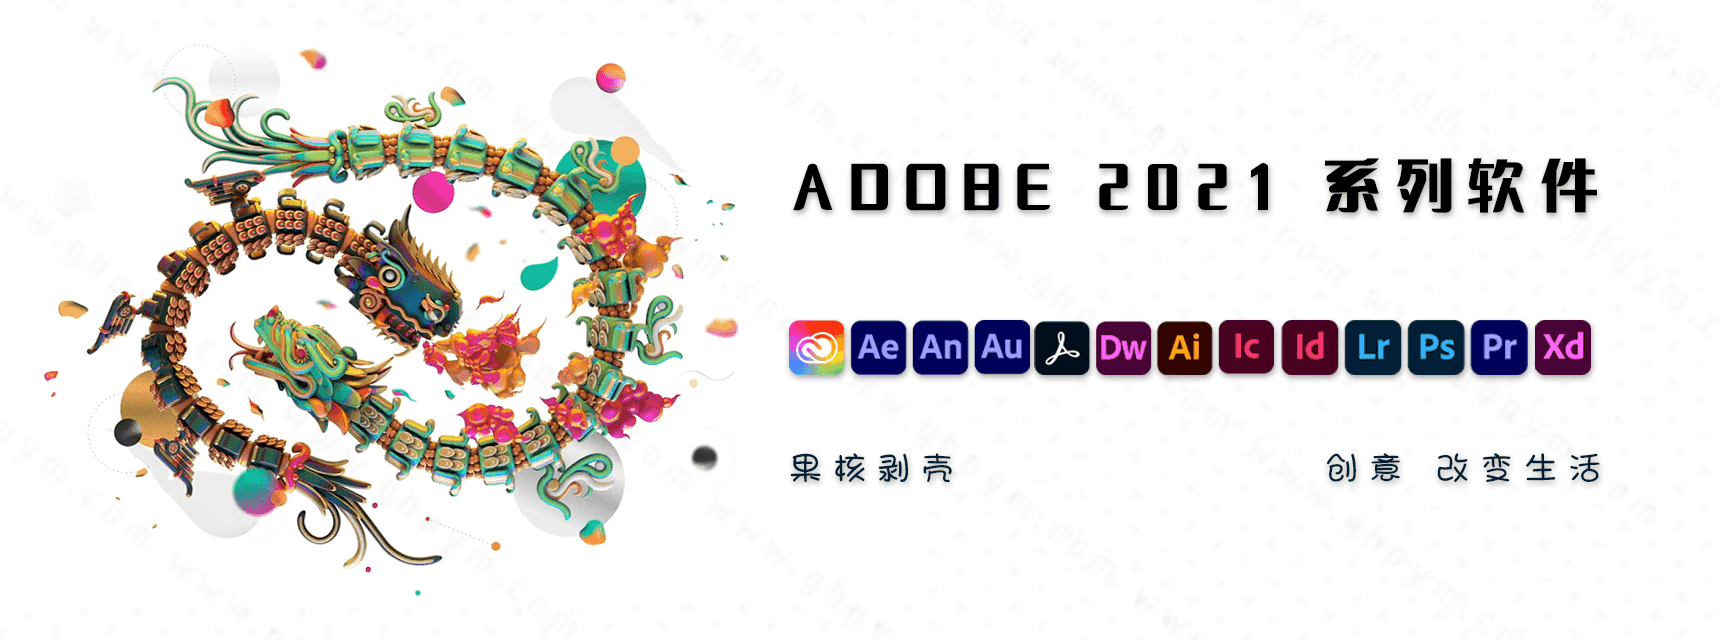 Adobe 创意应用软件 2021 合集